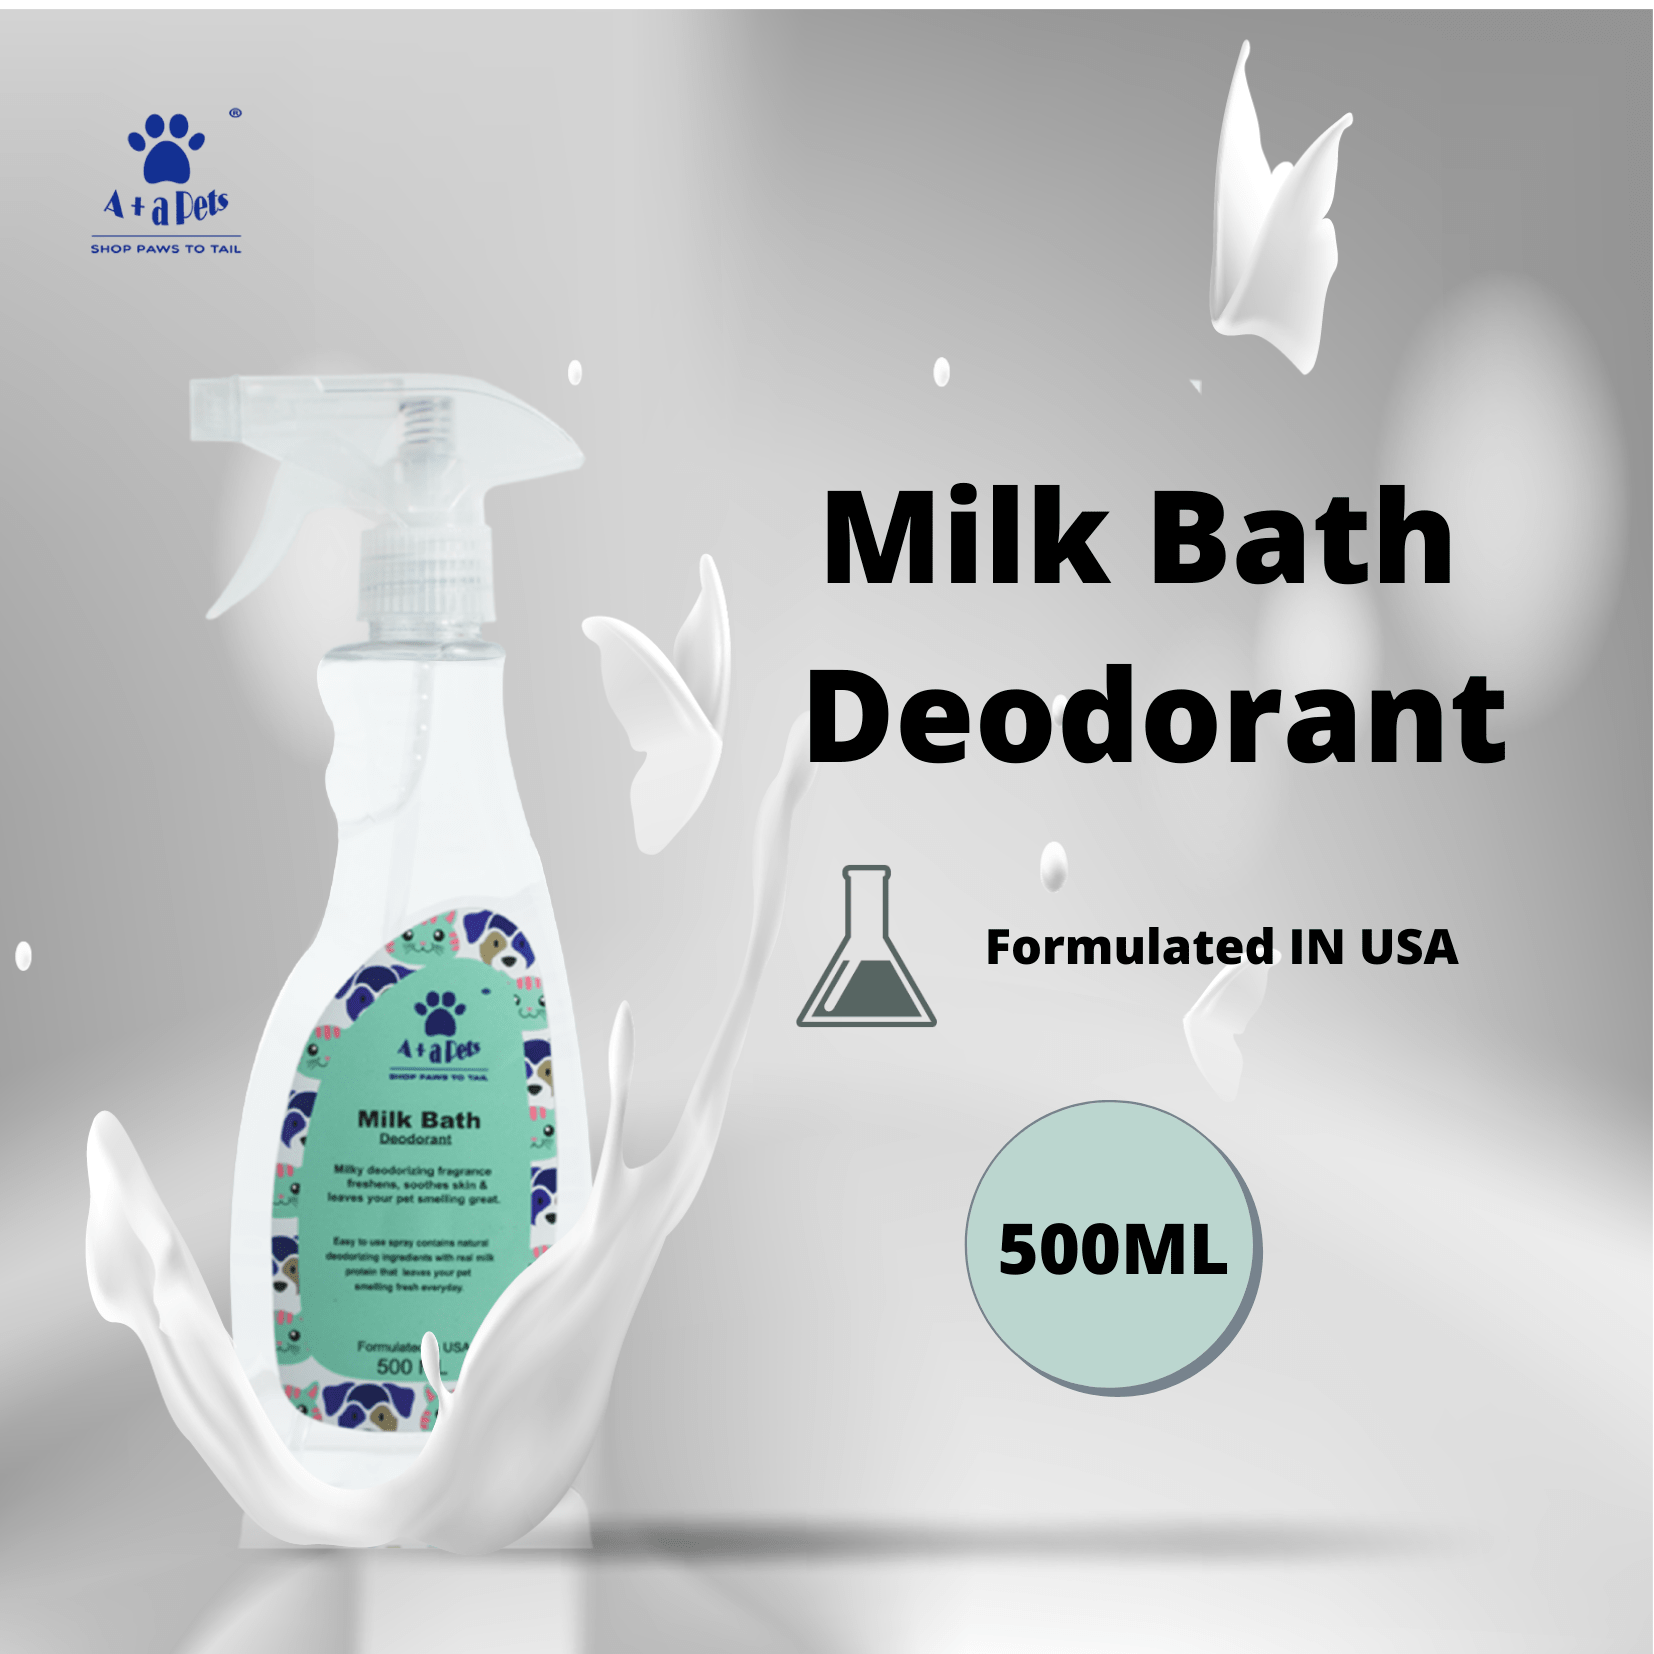 A+a Pets' Milk Bath Deodorant for Pets (500ML)